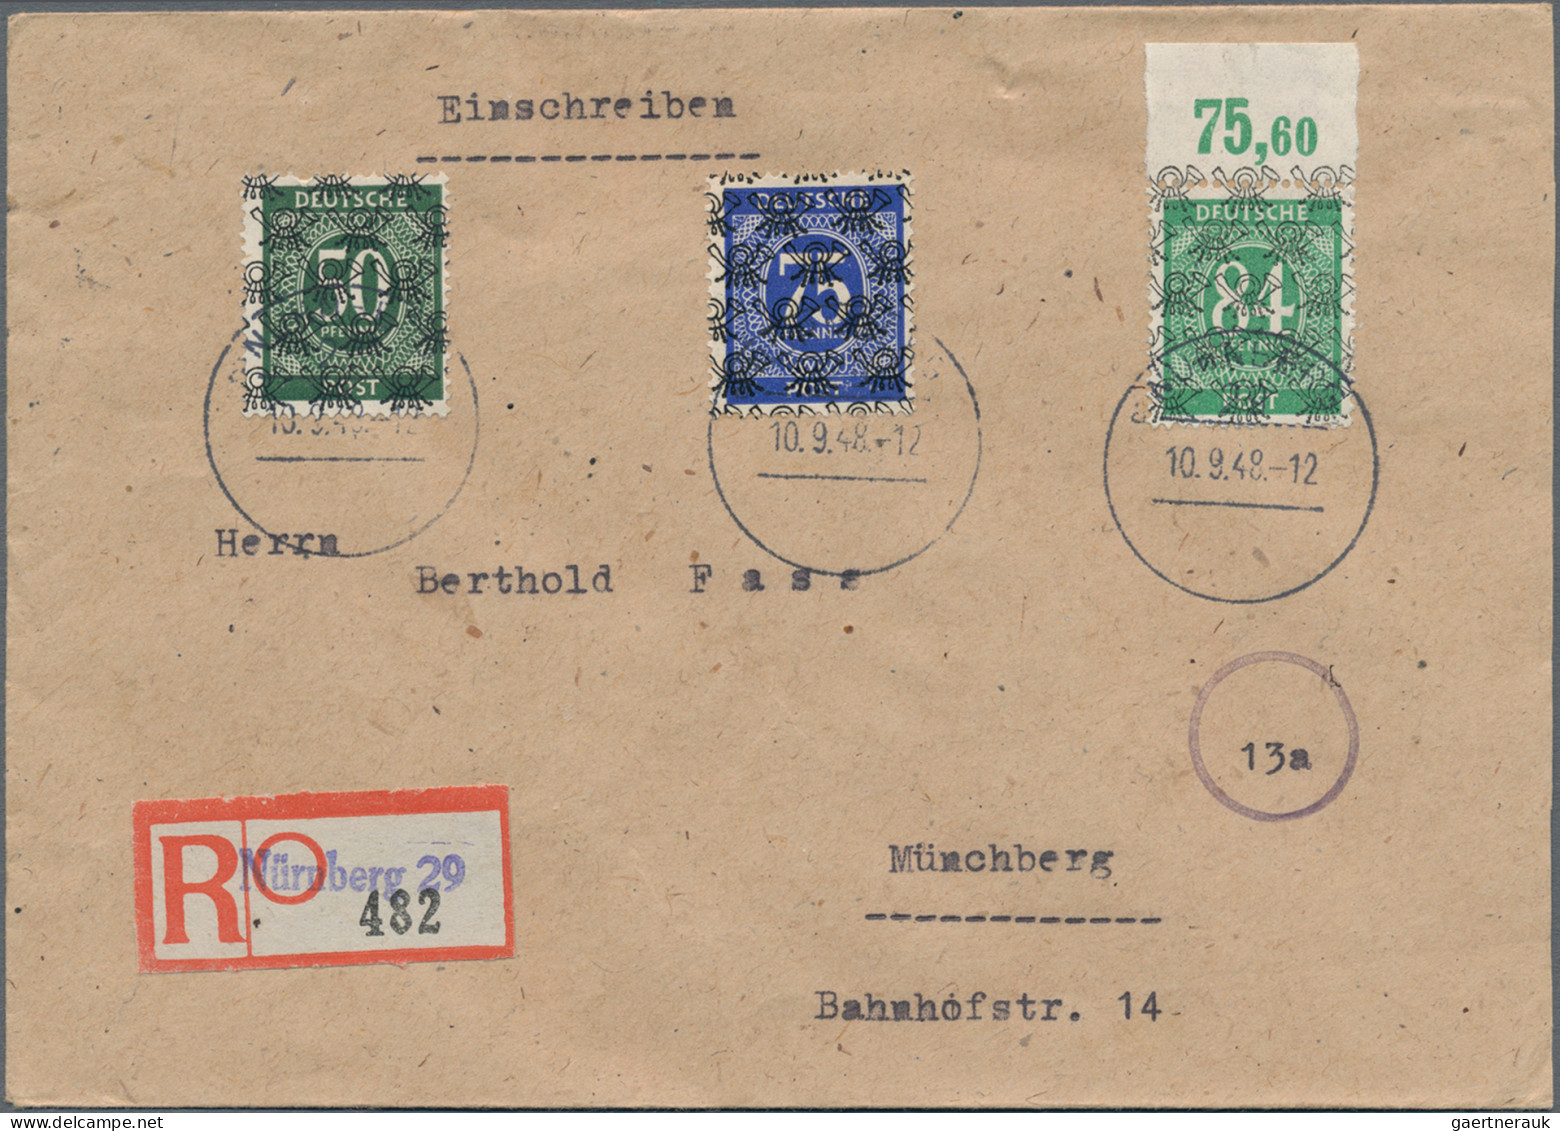 Deutschland nach 1945: 1945/54, umfangreicher Posten Briefe und Ganzsachen, dabe